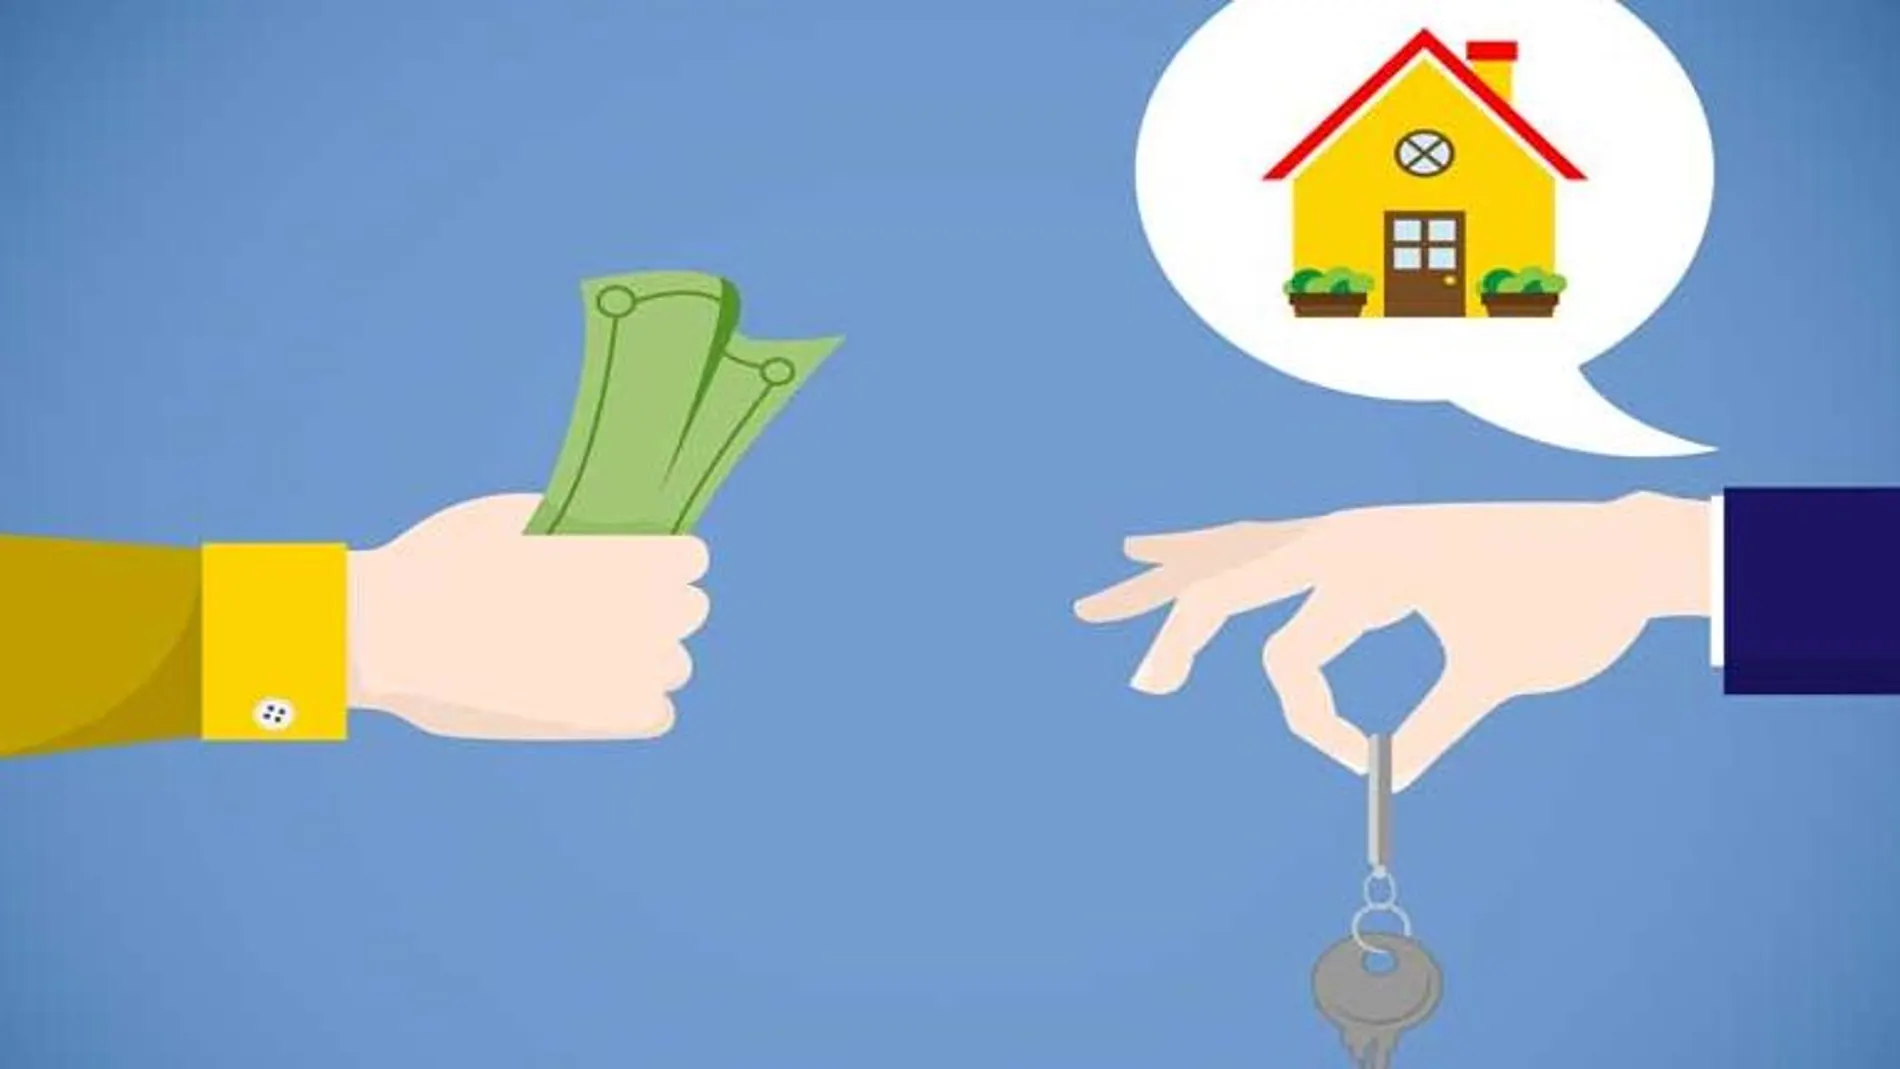 Soluciones inmobiliarias para encontrar o vender tu vivienda